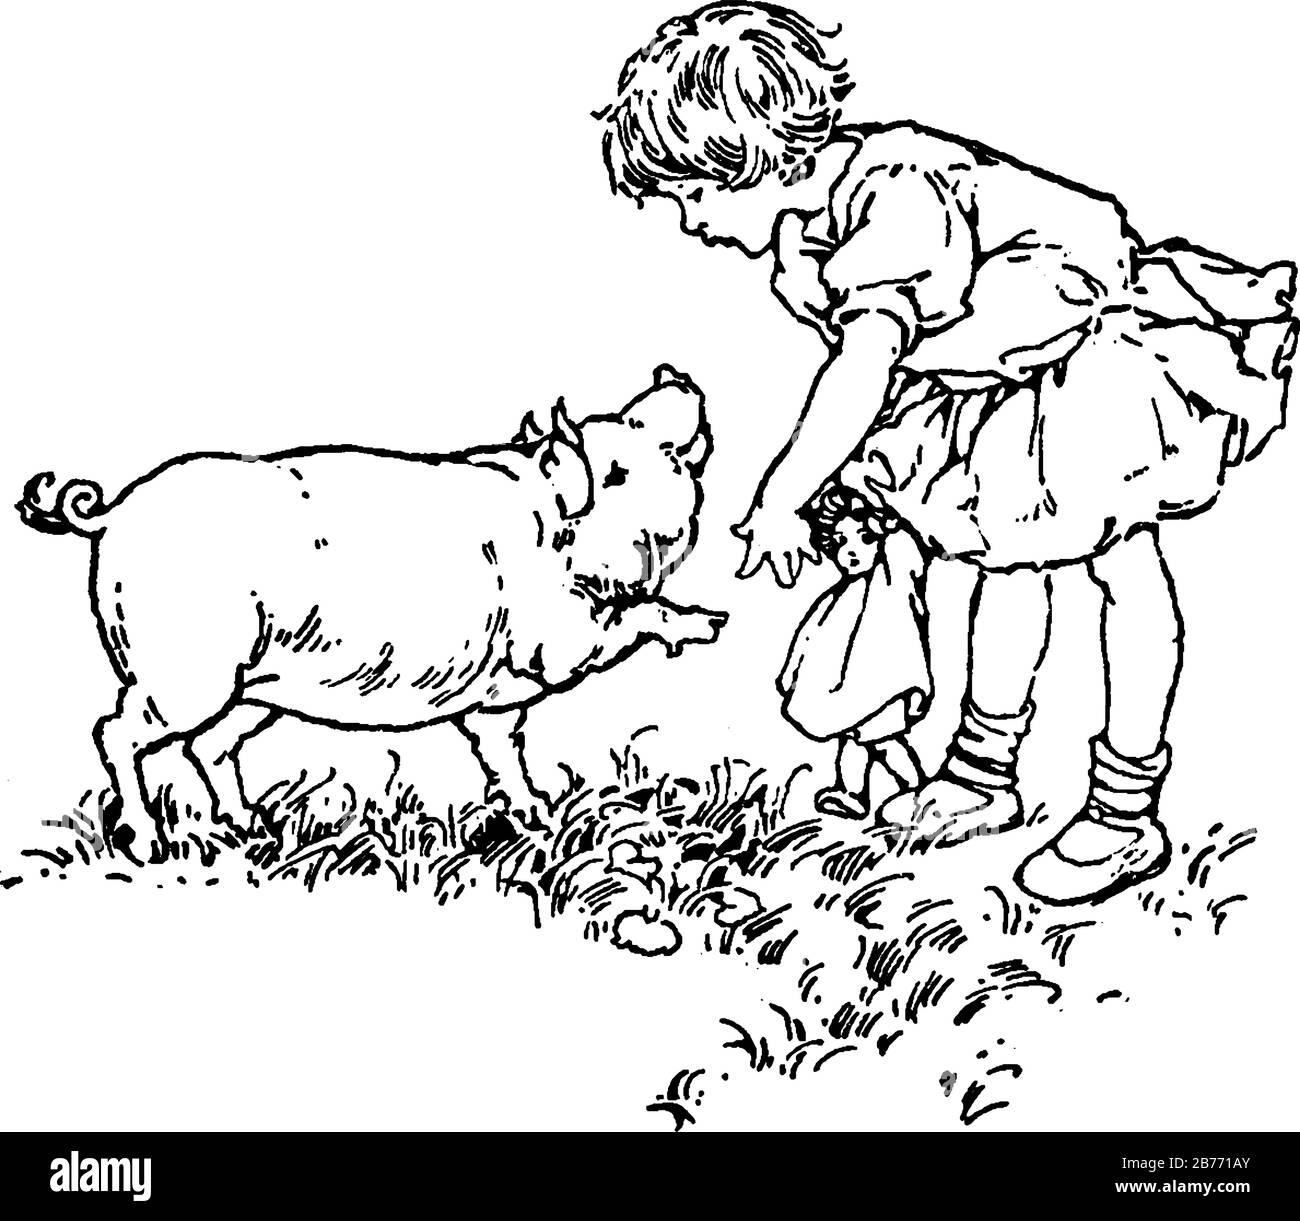 Das Bild zeigt ein kleines Mädchen, das ihre Puppe hält und mit einem Schwein spricht, mit großem Kopf, langen Schnauze, kleinen abgerundeten Ohren und einem borstigen spärlichen Haar, Stock Vektor